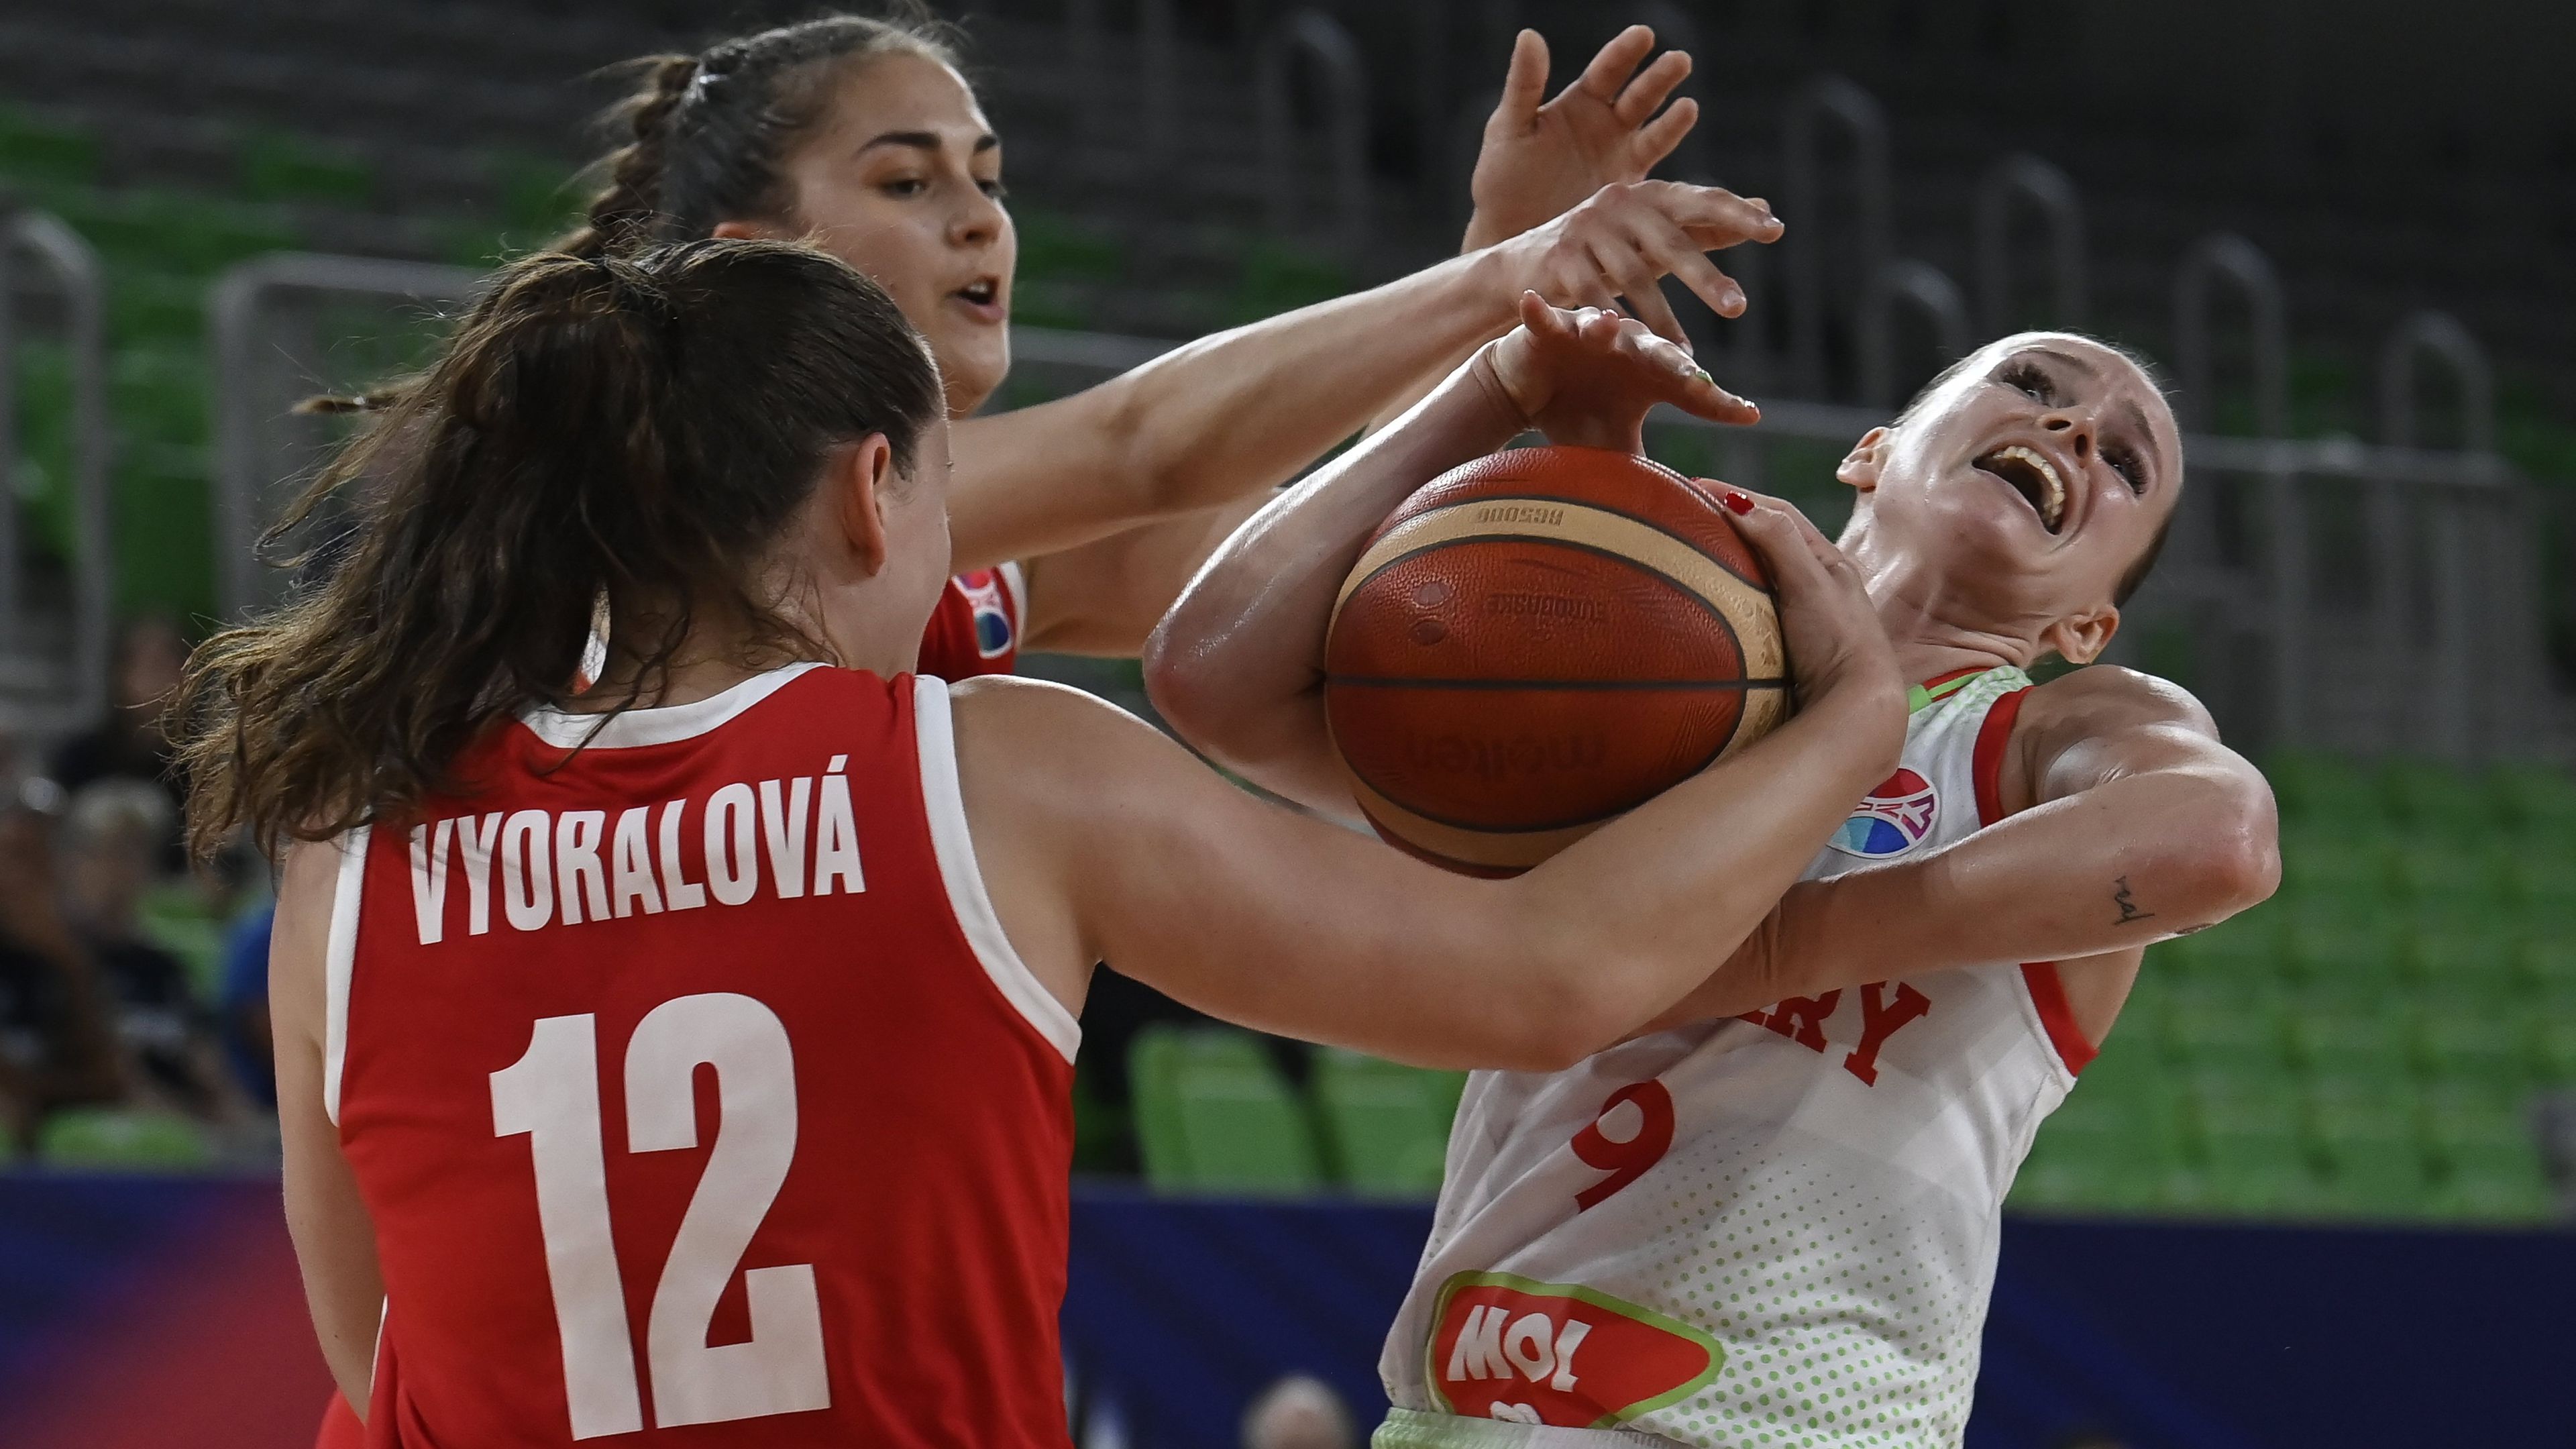 Huszonhat év után elődöntős a női kosárlabda-válogatott az Európa-bajnokságon